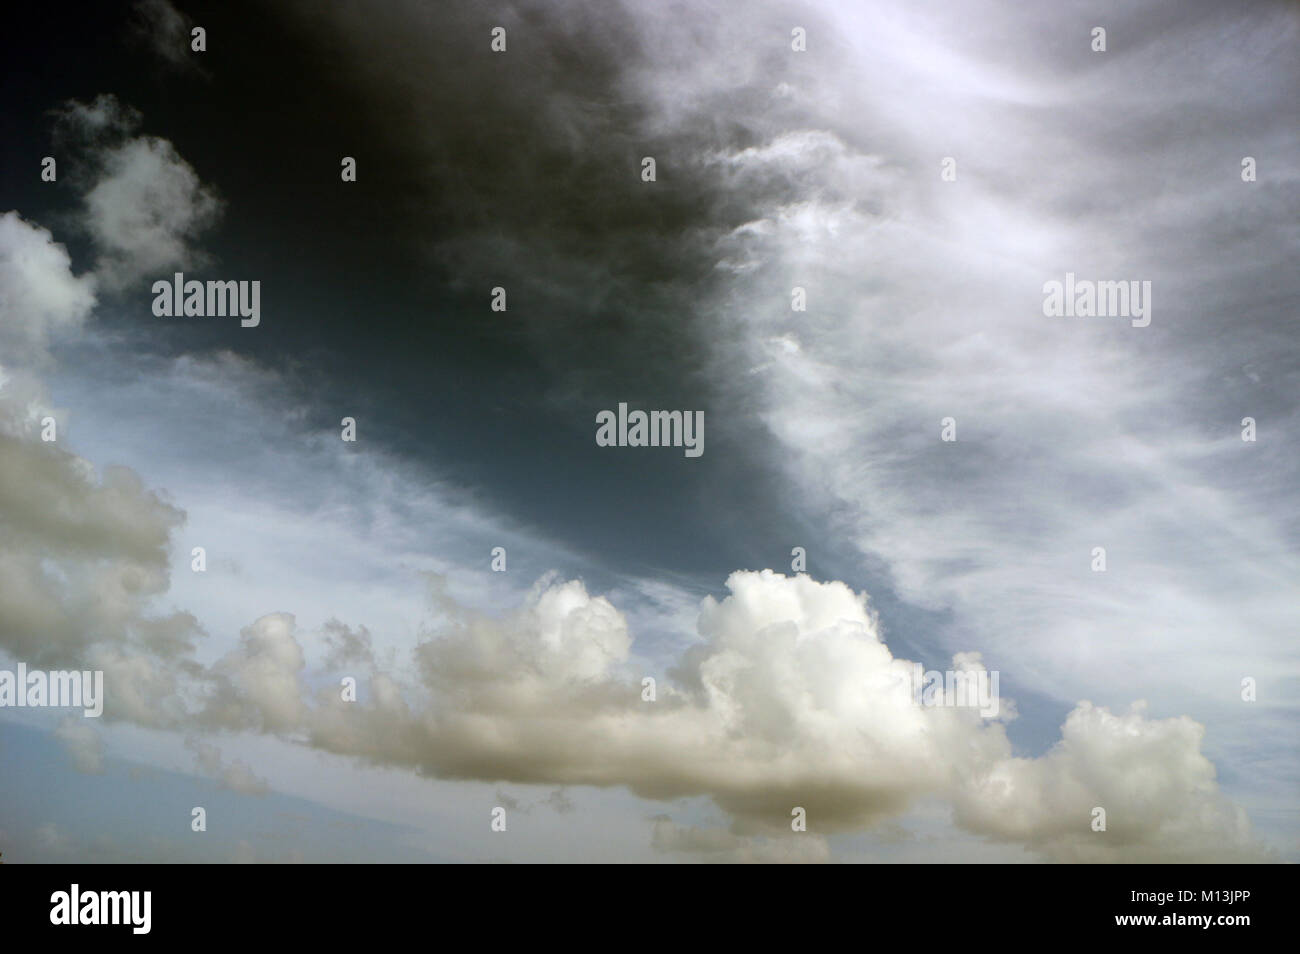 La nuvola bianca pesante si staglia in un cielo grigio con strisce bianche, ala d'angelo, drago, cavalluccio marino o aspetto fantasma. Foto Stock